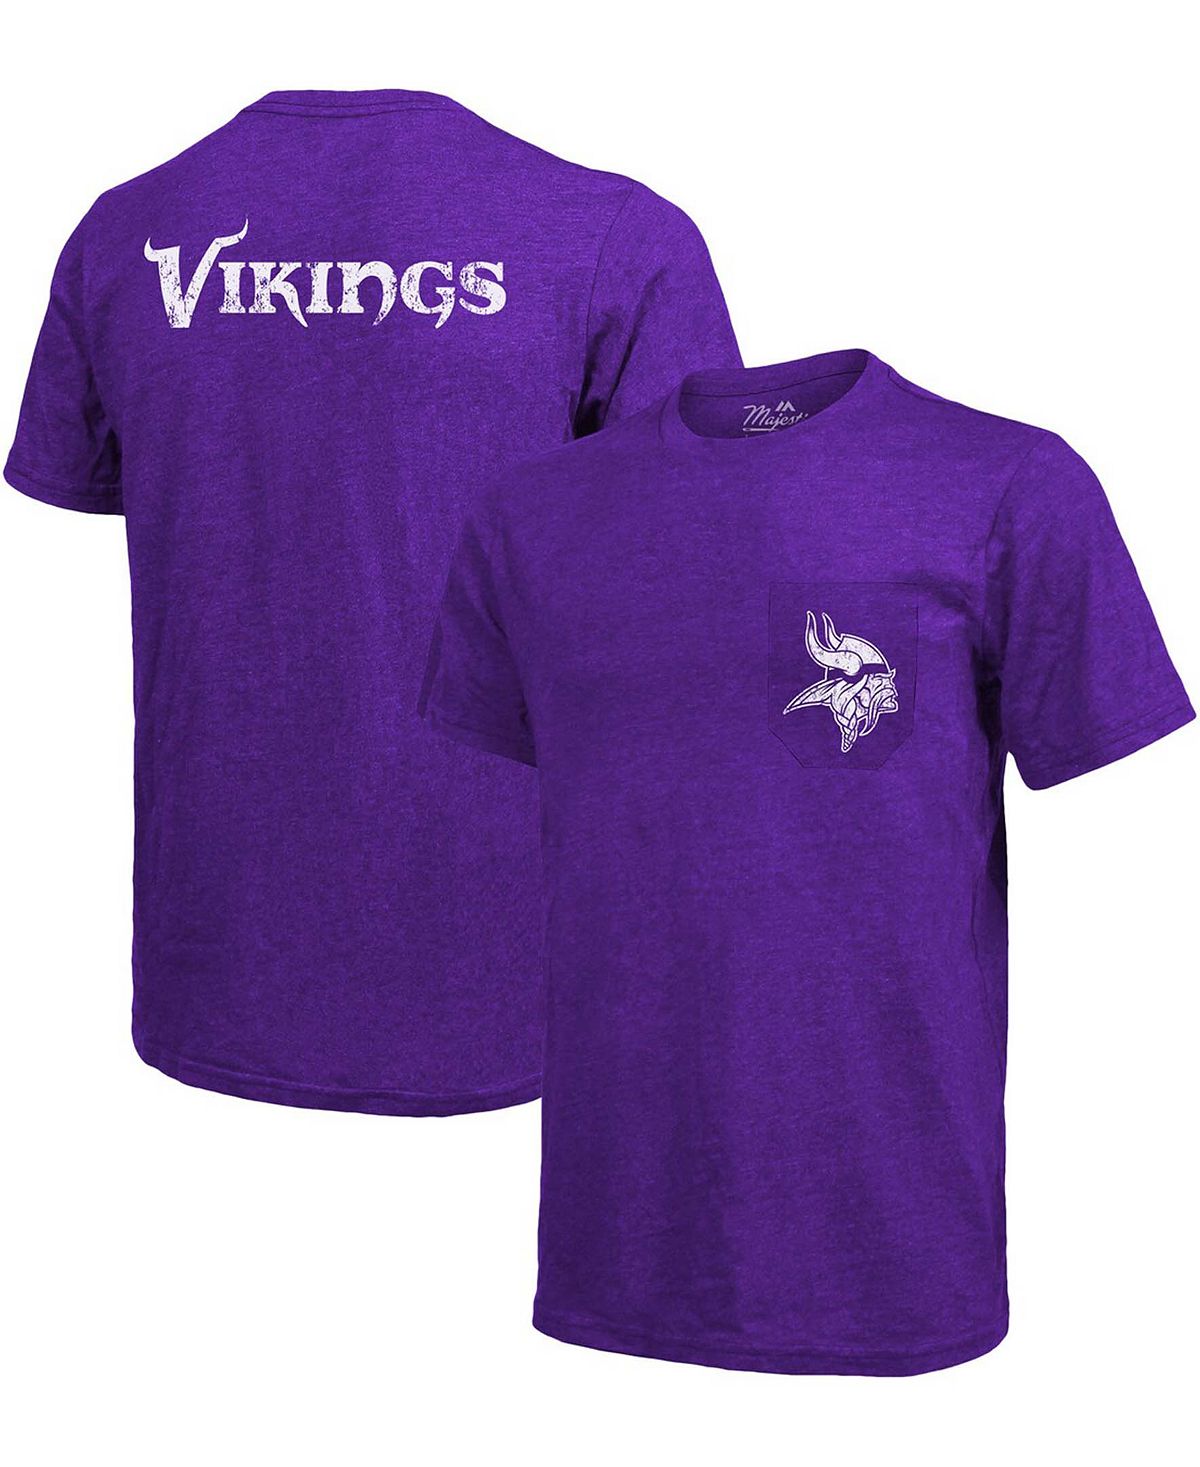 Футболка minnesota vikings tri-blend pocket pocket - пурпурный Majestic, фиолетовый черная футболка с принтом tri blend pocket atlanta falcons majestic черный